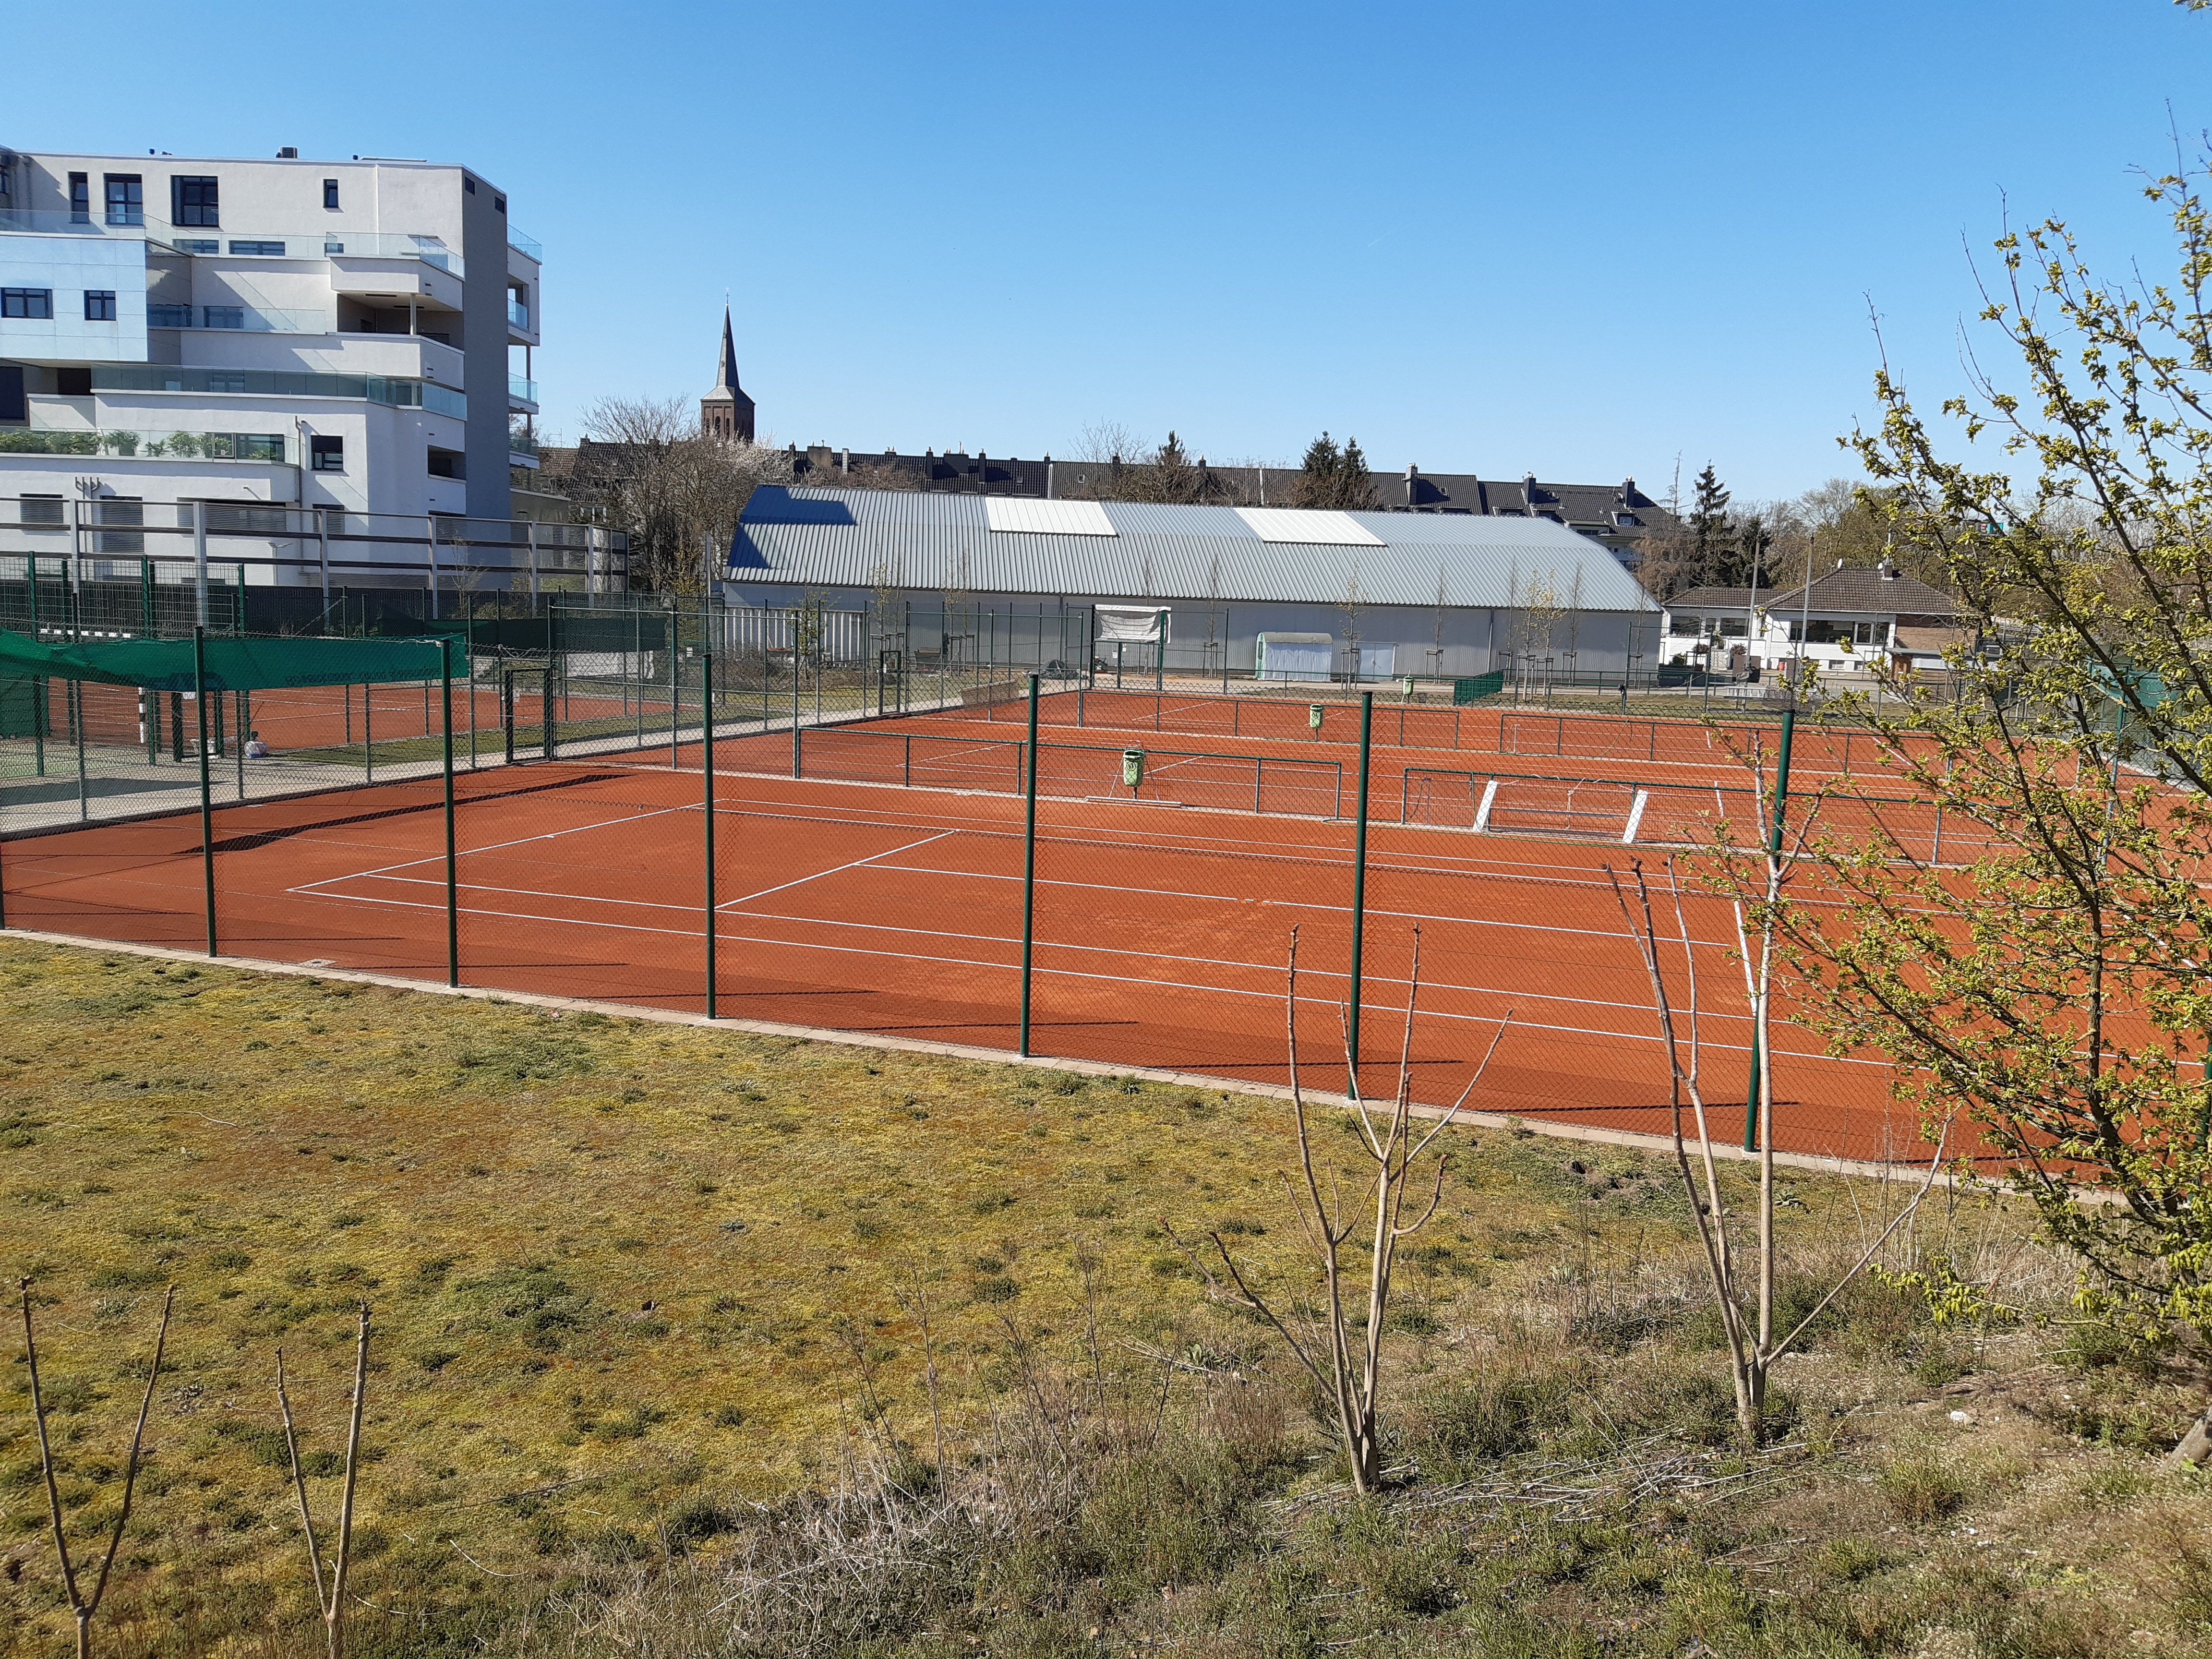 Hoffnung auf differenzierte Regelung für Tennis